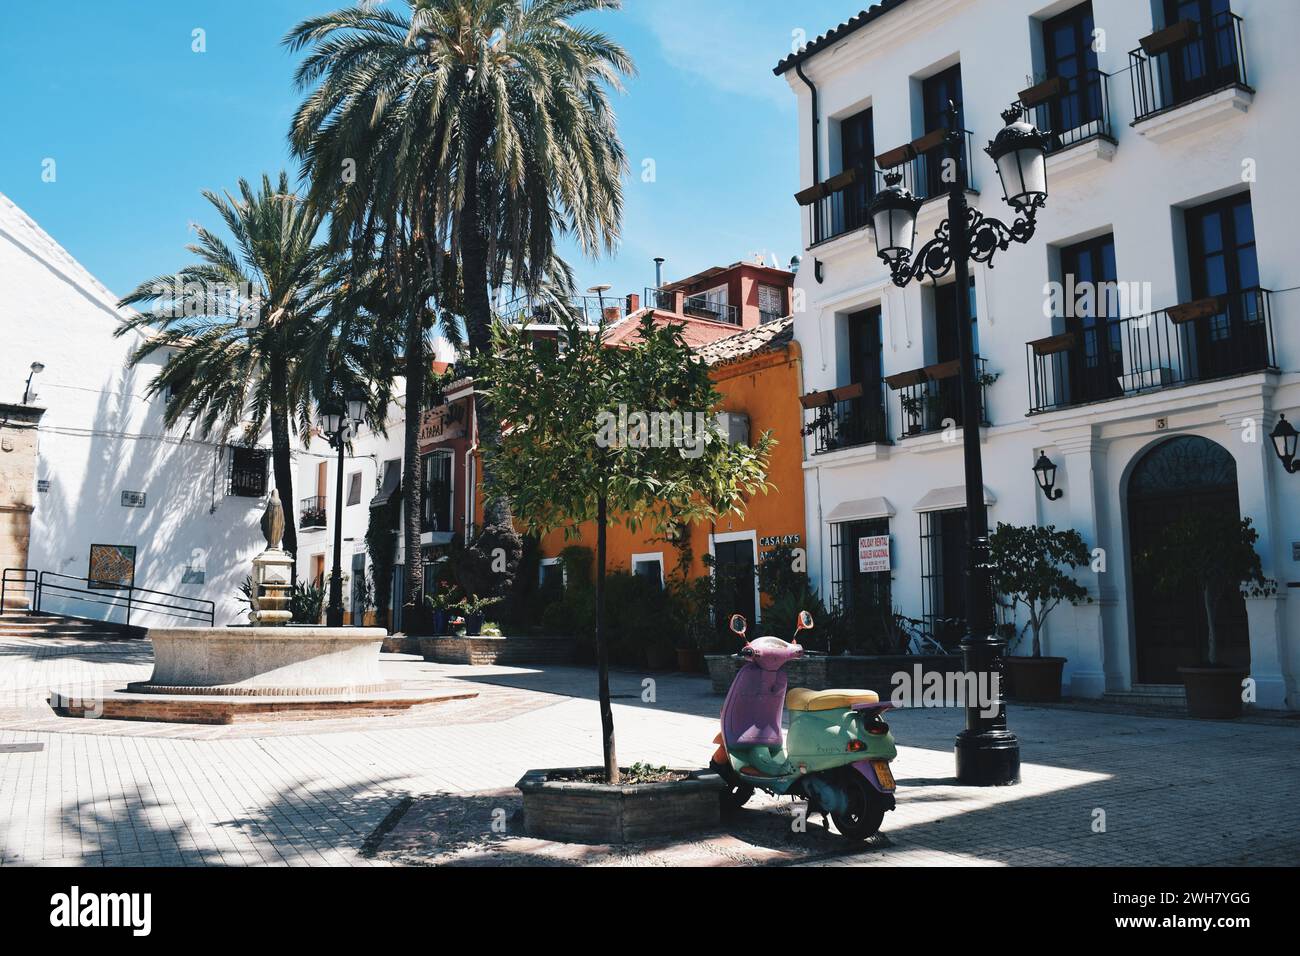 Piccola piazza con facciate colorate a Marbella in Andalusia, Spagna, l'11 agosto 2017 Foto Stock